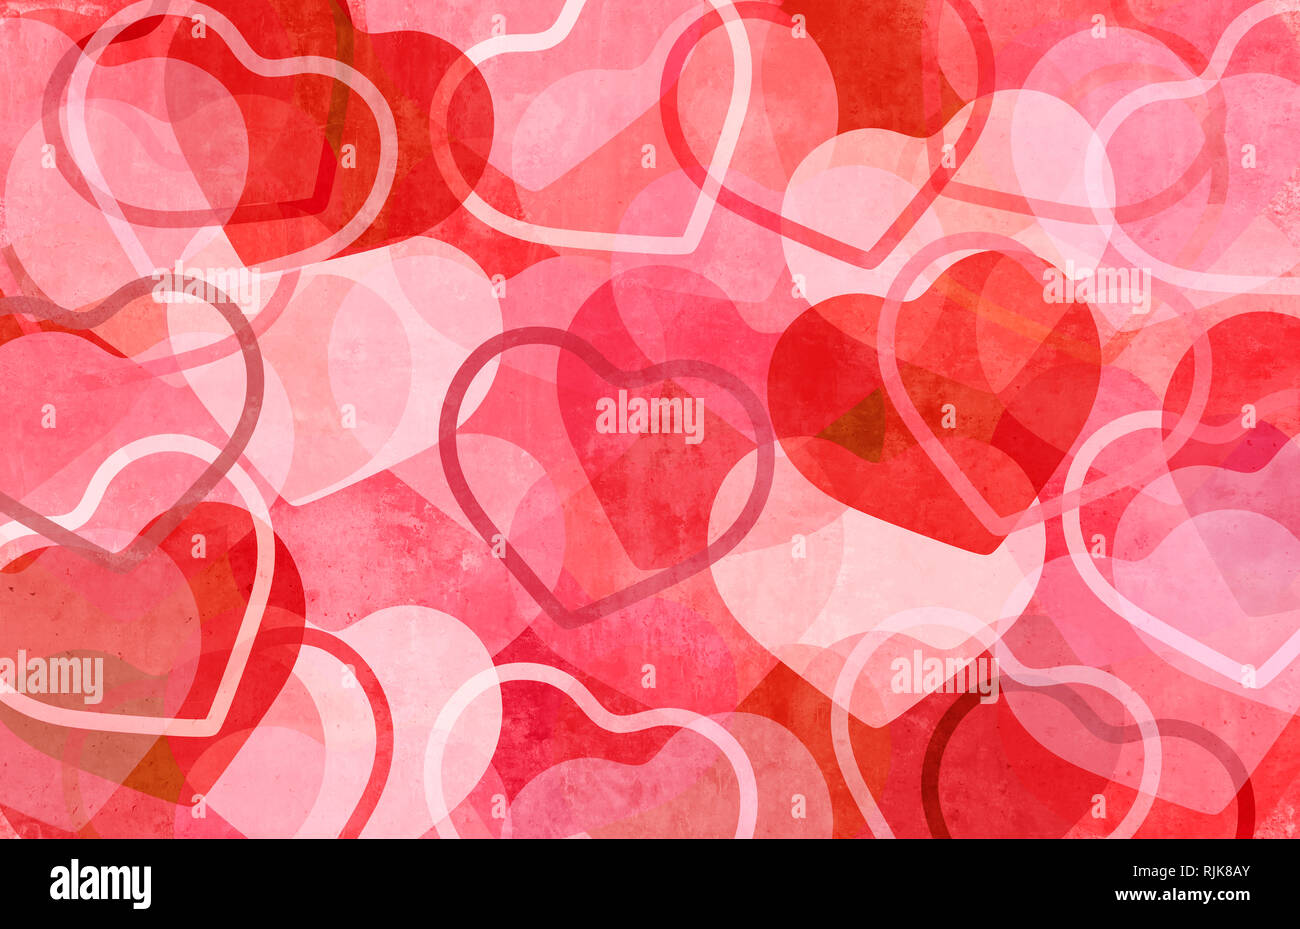 Liebe Zusammenfassung Hintergrund wie Apink und roten Design, einen romantischen Valentinstag Ferienwohnung Muster mit 3D-Illustration Elemente. Stockfoto